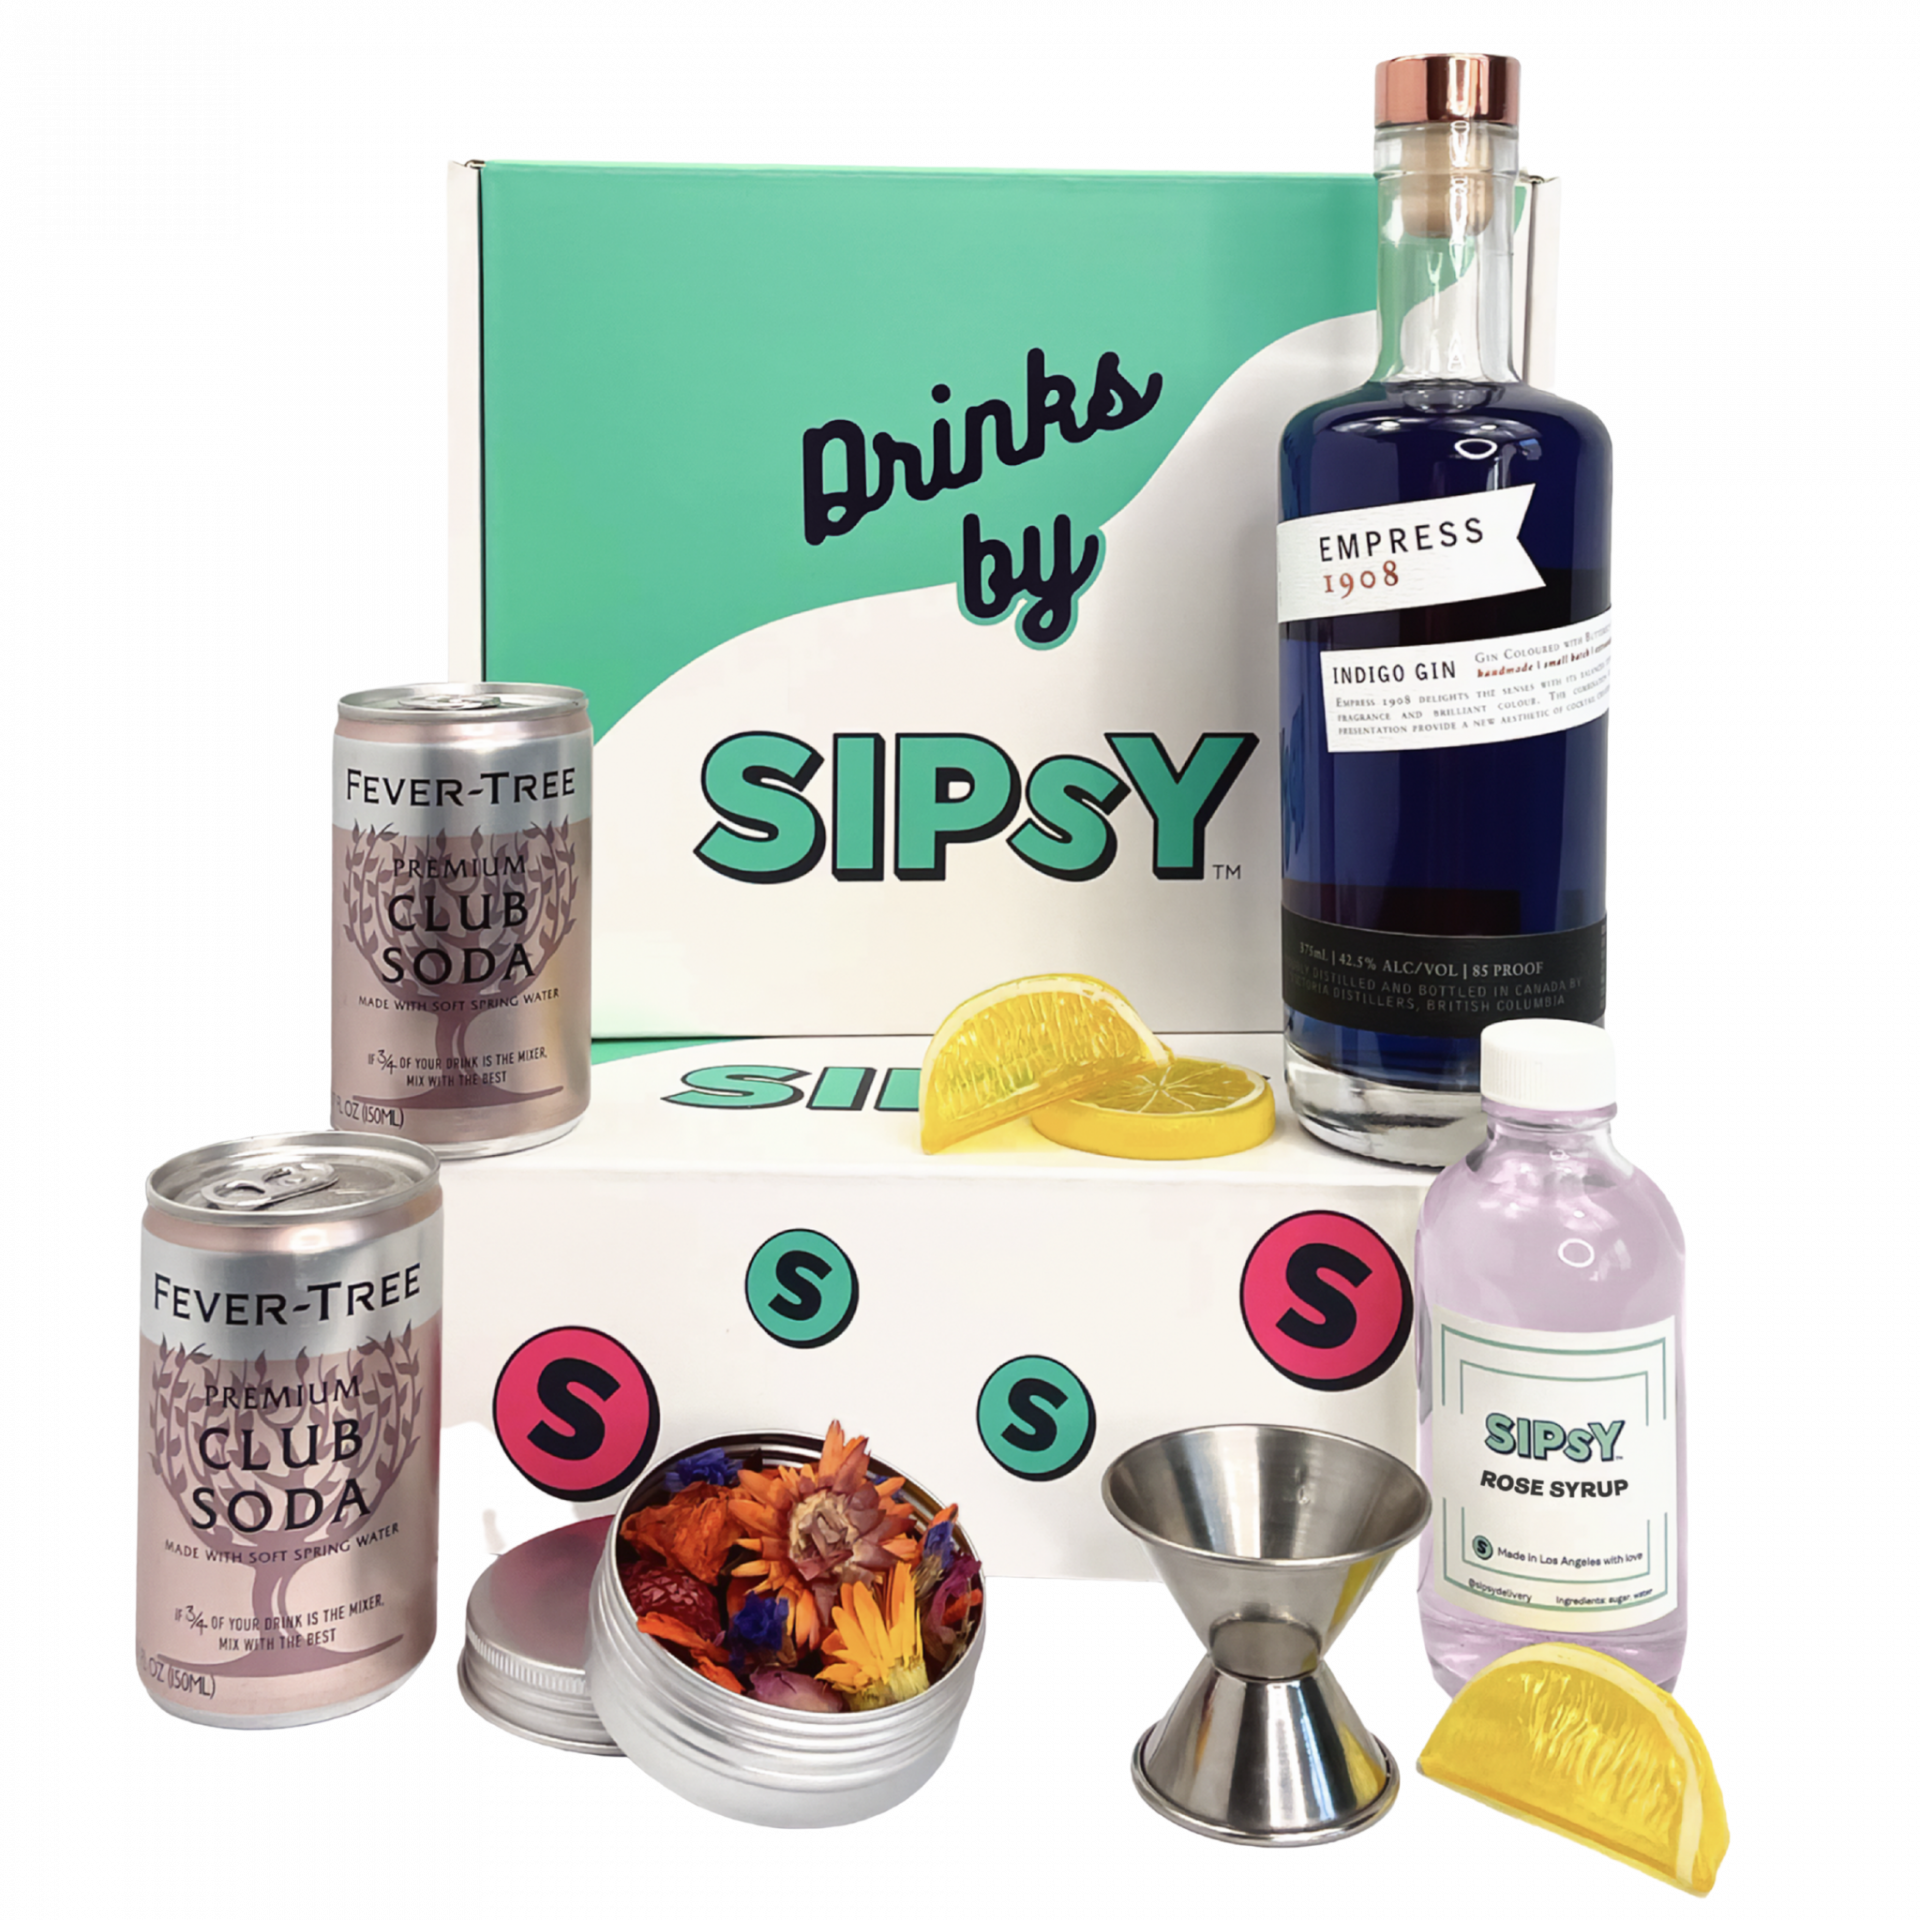 gin cocktail kit gift